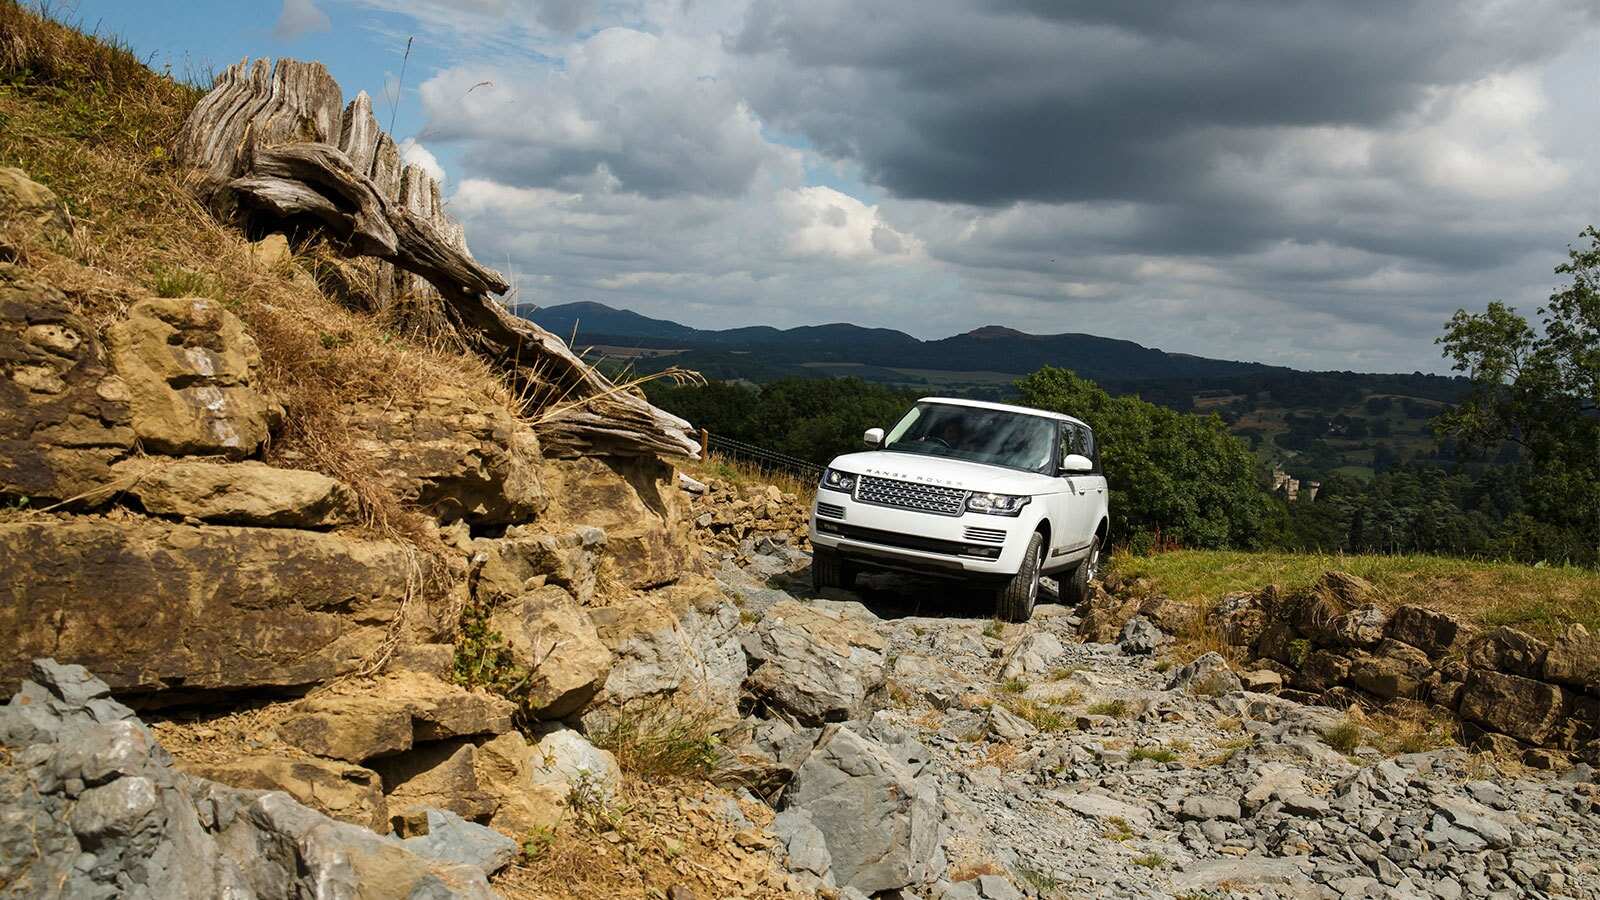 Range Rover (White) driving on rocky terrain